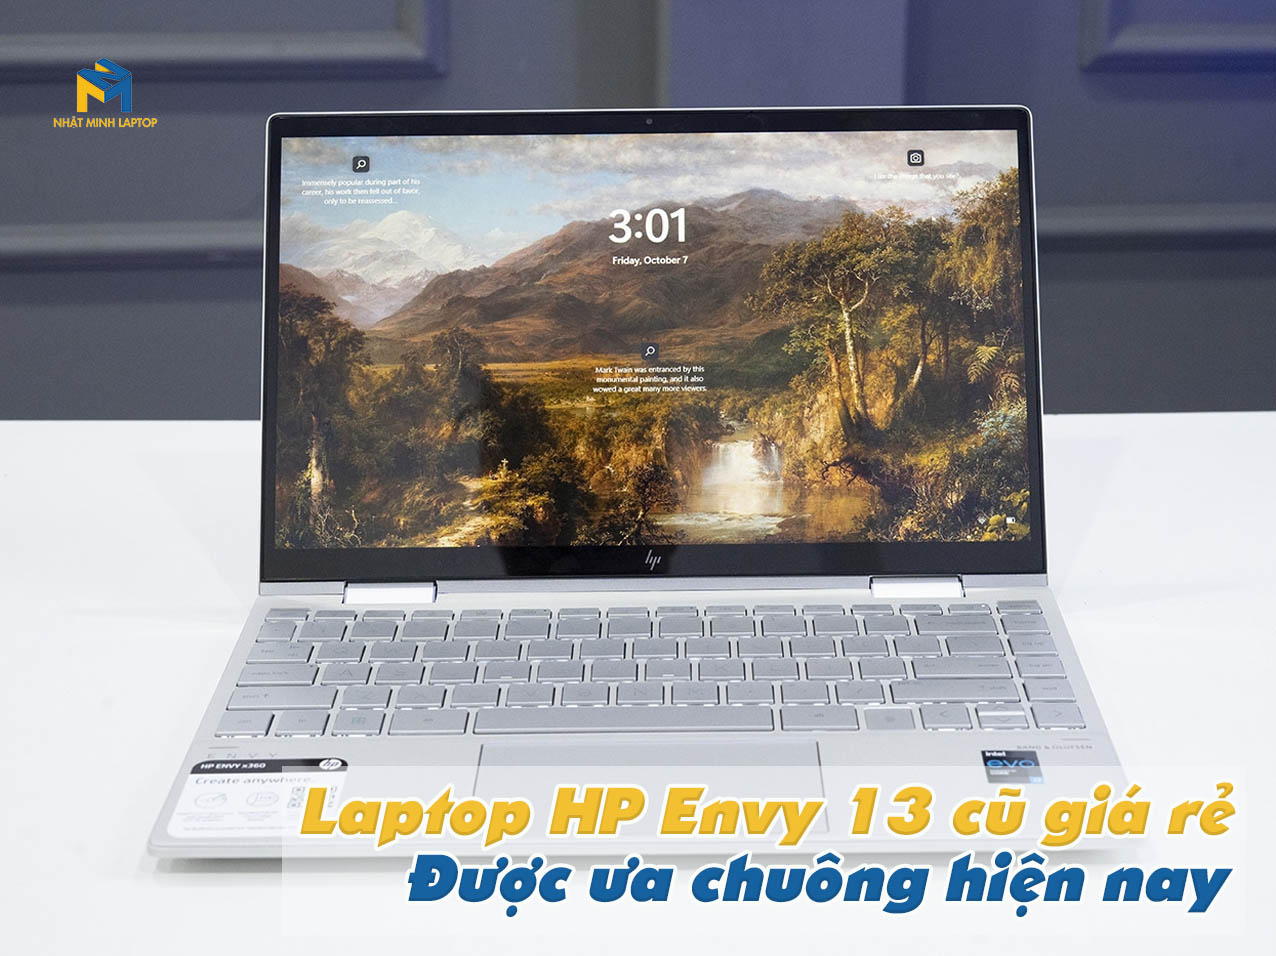 Laptop HP Envy cũ giá rẻ được ưa chuộng hiện nay